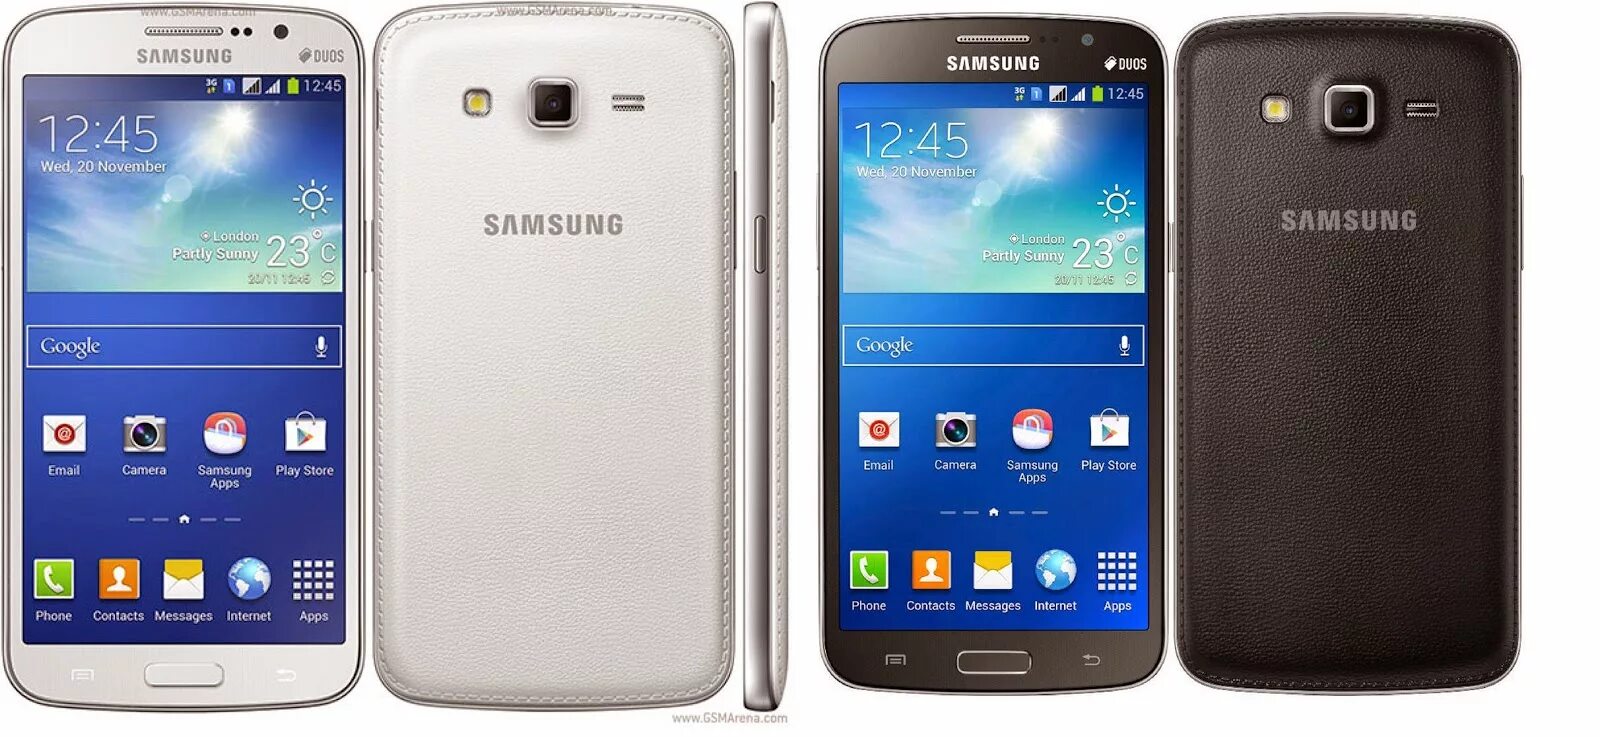 Samsung galaxy 34. Samsung Galaxy g2. Samsung Galaxy 2. Samsung g200. Самсунг корд 2.